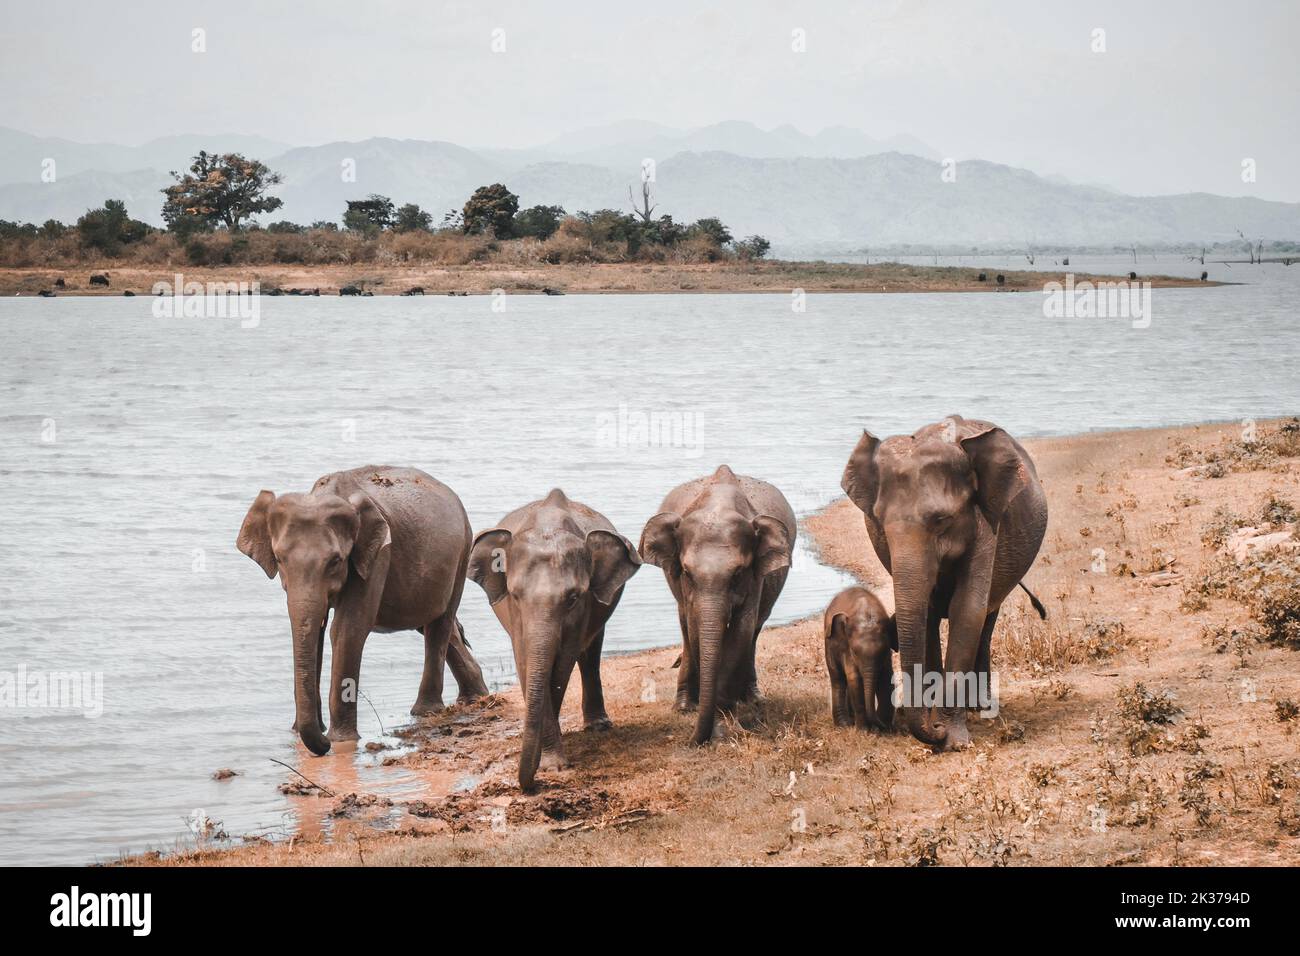 Famille d'éléphants debout près du lac pour boire un verre. Les éléphants adultes protègent un petit enfant des prédateurs sauvages dans les champs de savane et d'herbe africains. Concept de la faune et de la flore. Filtre de tonalité orange Banque D'Images